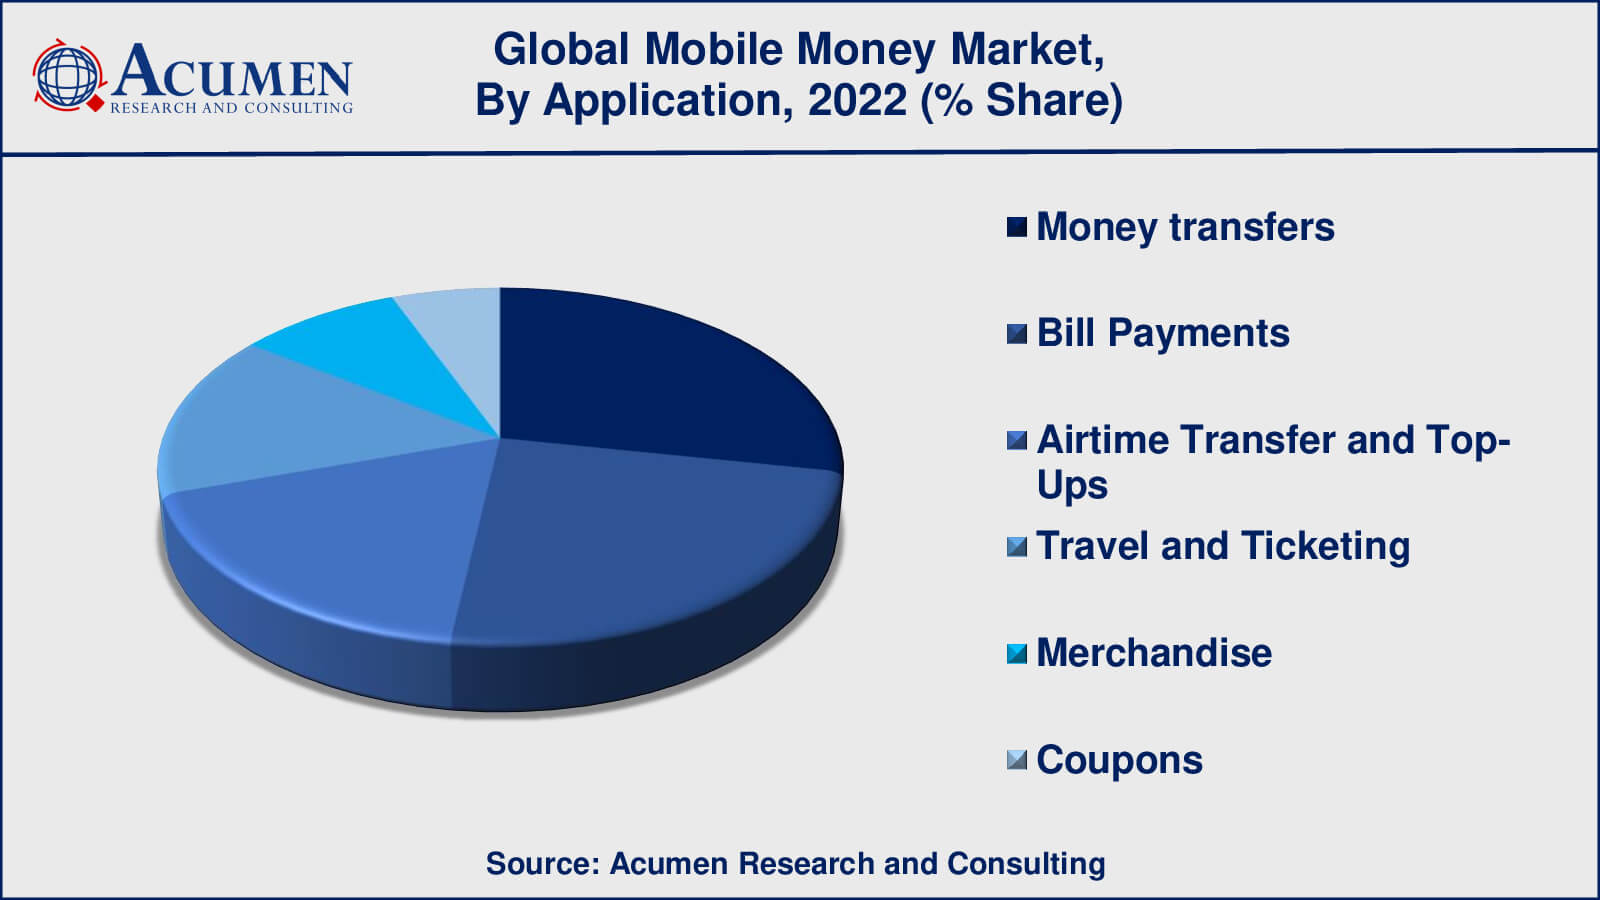 Mobile Money Market Growth Factors